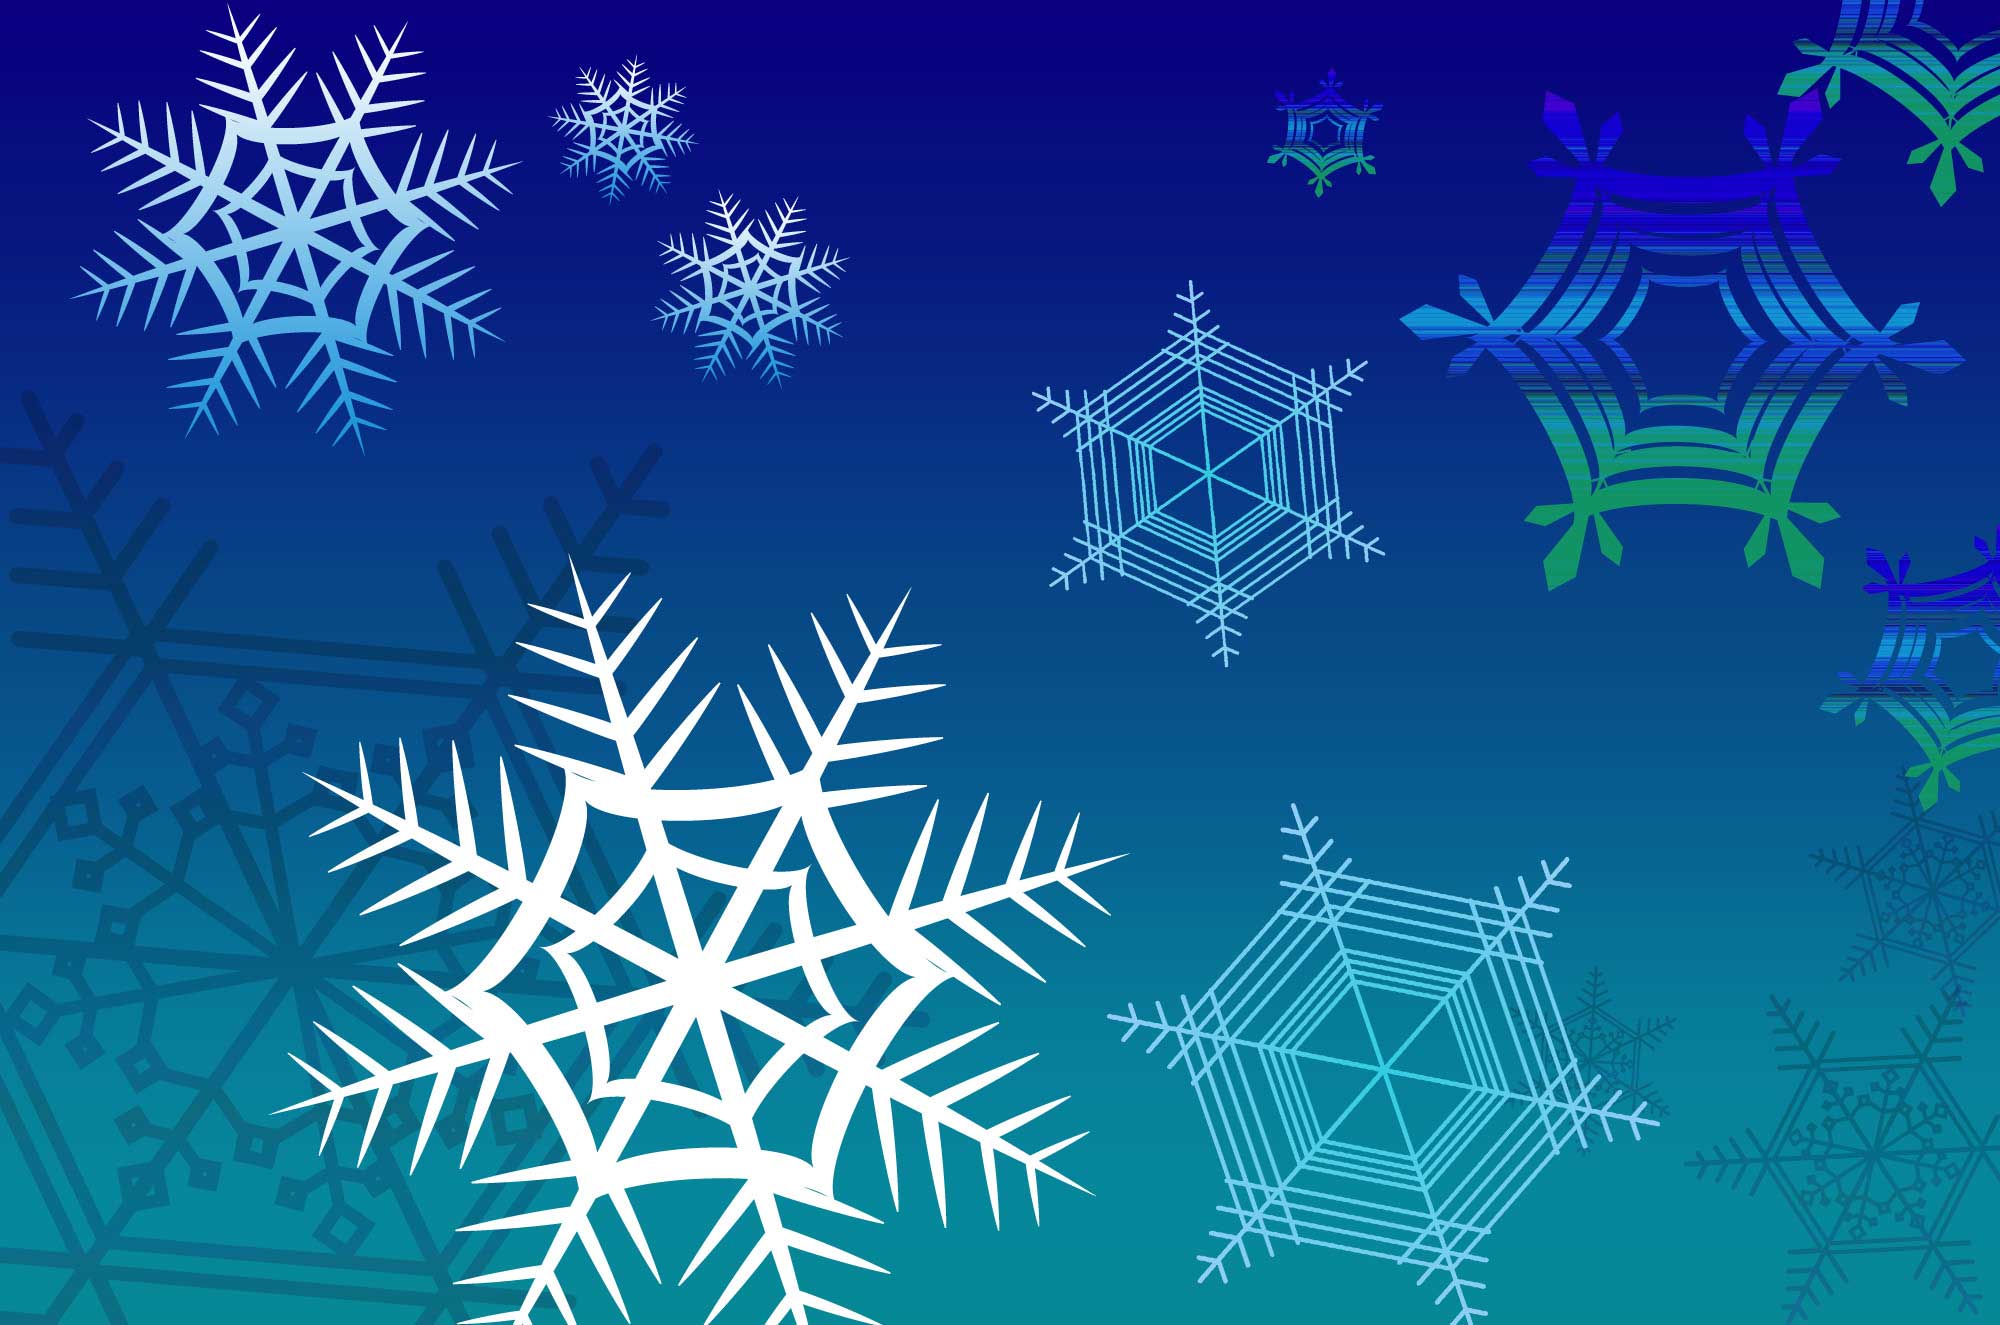 雪の結晶イラスト - 凍える氷とアートなイメージ無料素材